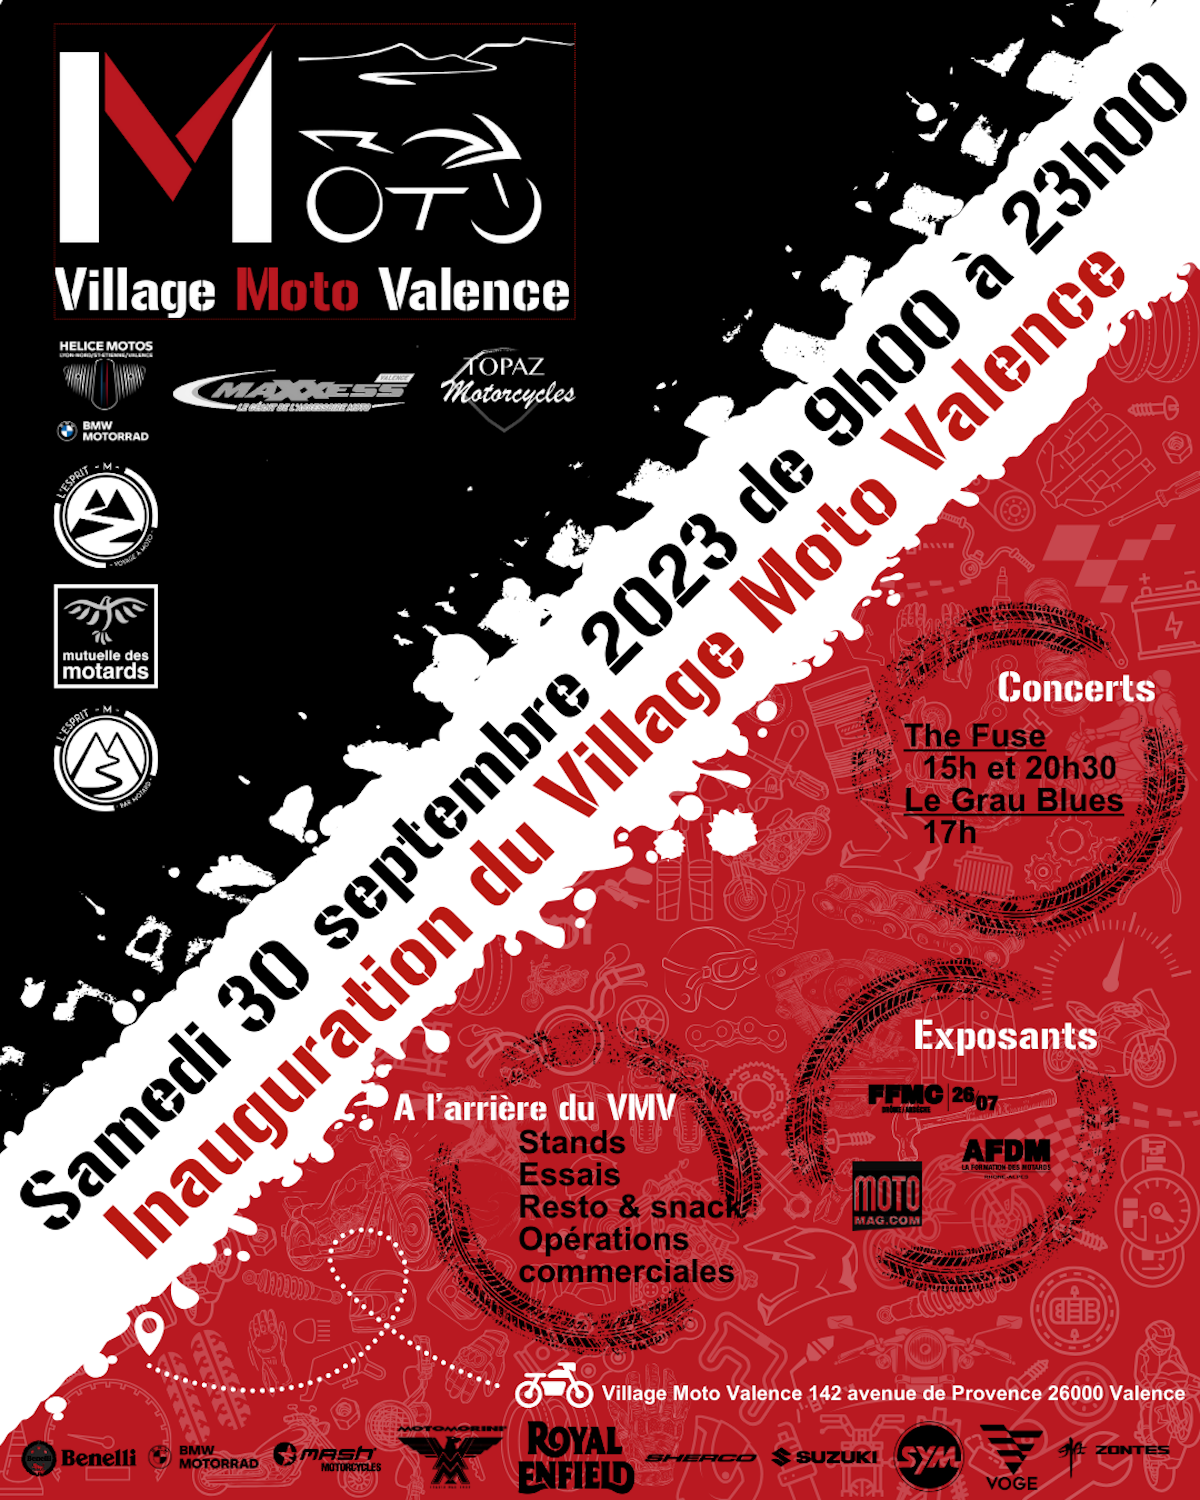 Journée d'inauguration du Village Moto Valence le (...)